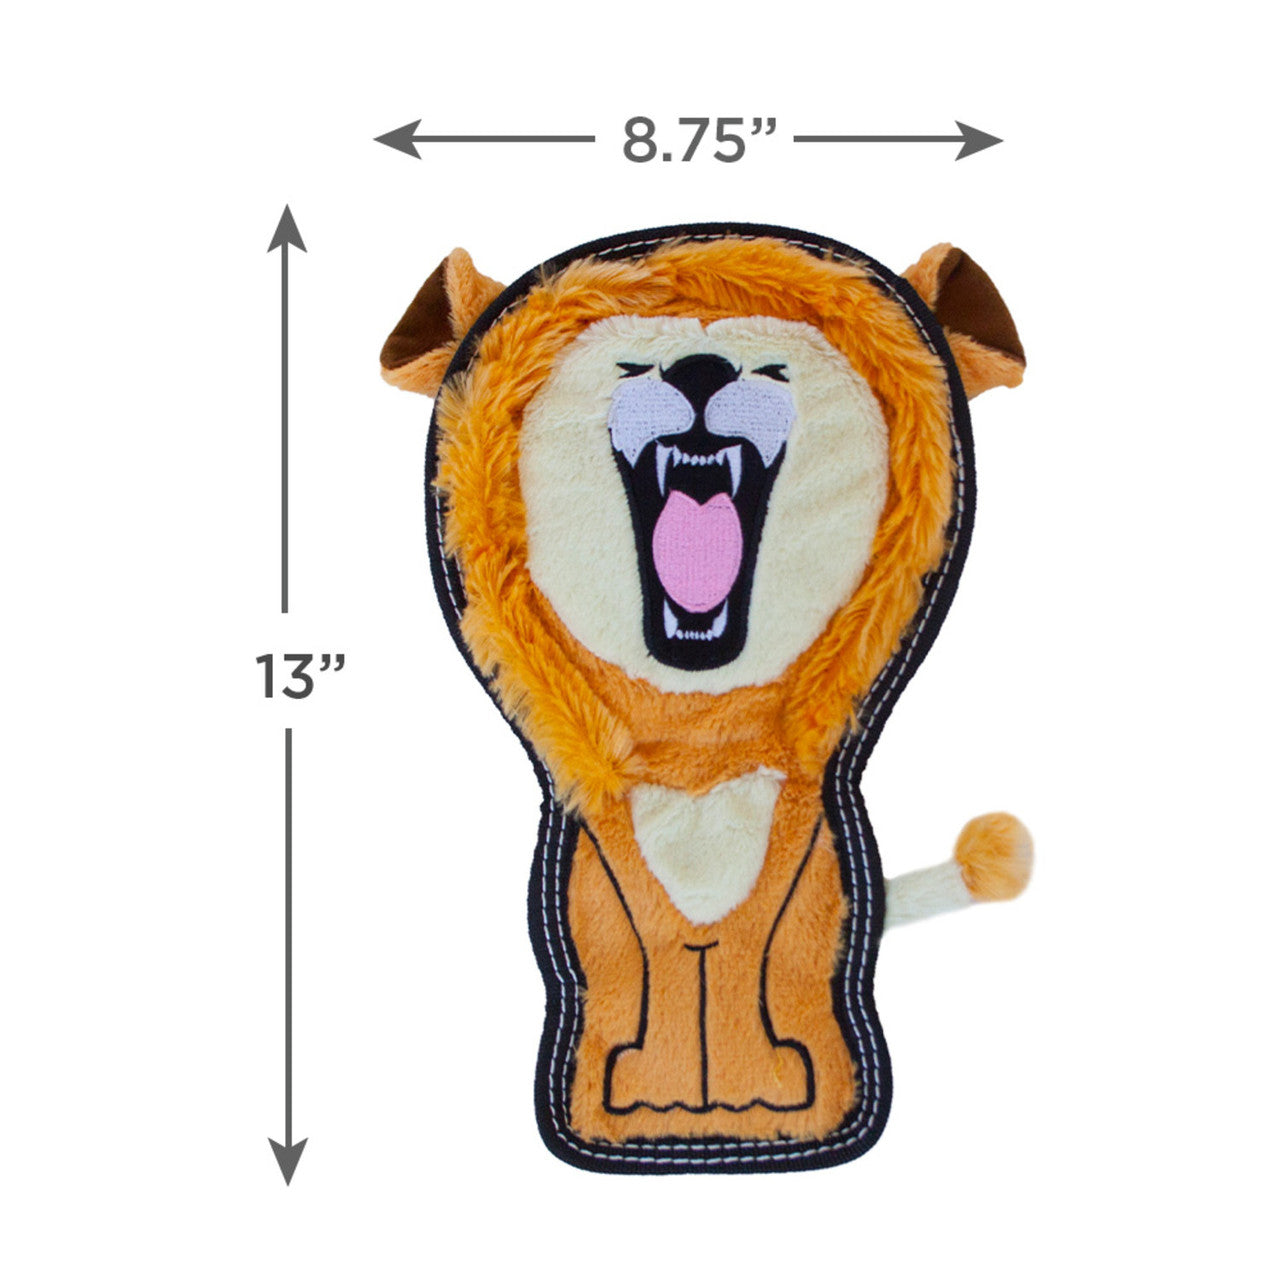 Outward Hound Tough Seamz  Lion Medium  |  No-Stuffing Squeaky Plush Toy